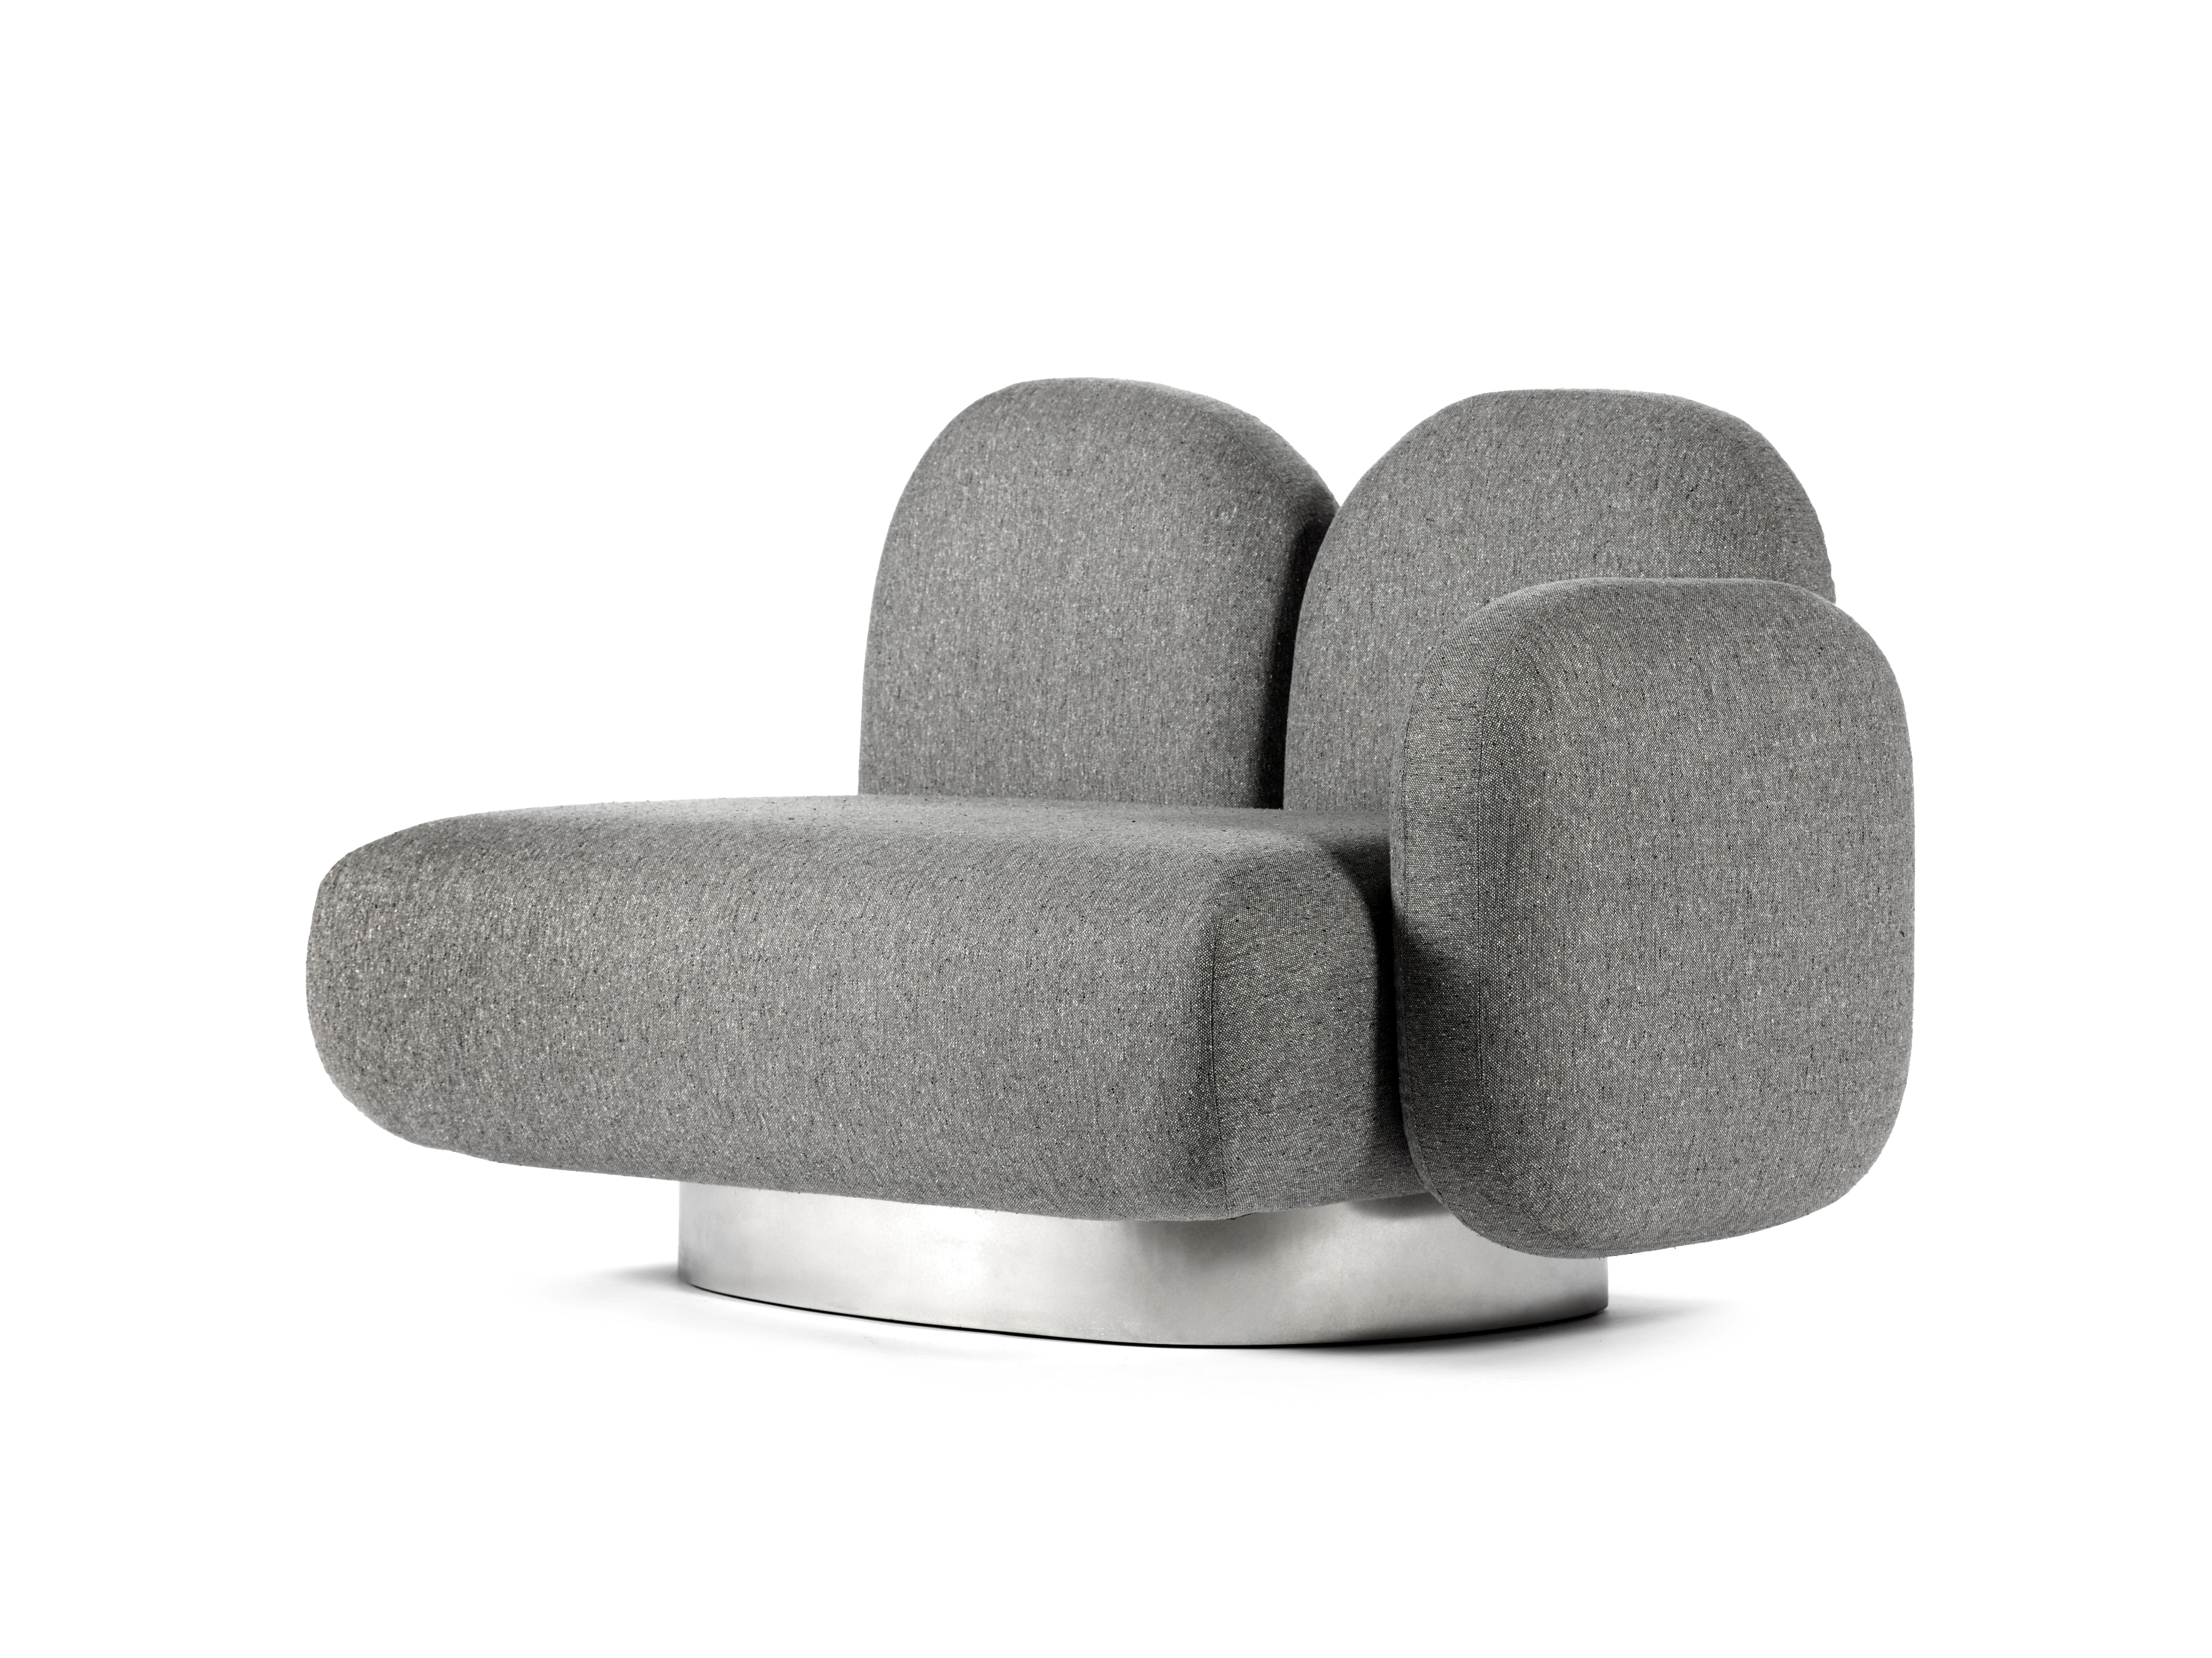 Modular Sofa Assemble 1-Sitz-Sofa mit 1 Armlehne rechts
Entworfen von Destroyers/Builders x Valery Objects
Polsterung: gijon sand

Code: V9020323

Abmessungen: L 87 B 123 H 85CM (SH 40 cm)
MATERIALIEN: Holz, Aluminium und Polstermöbel

Das